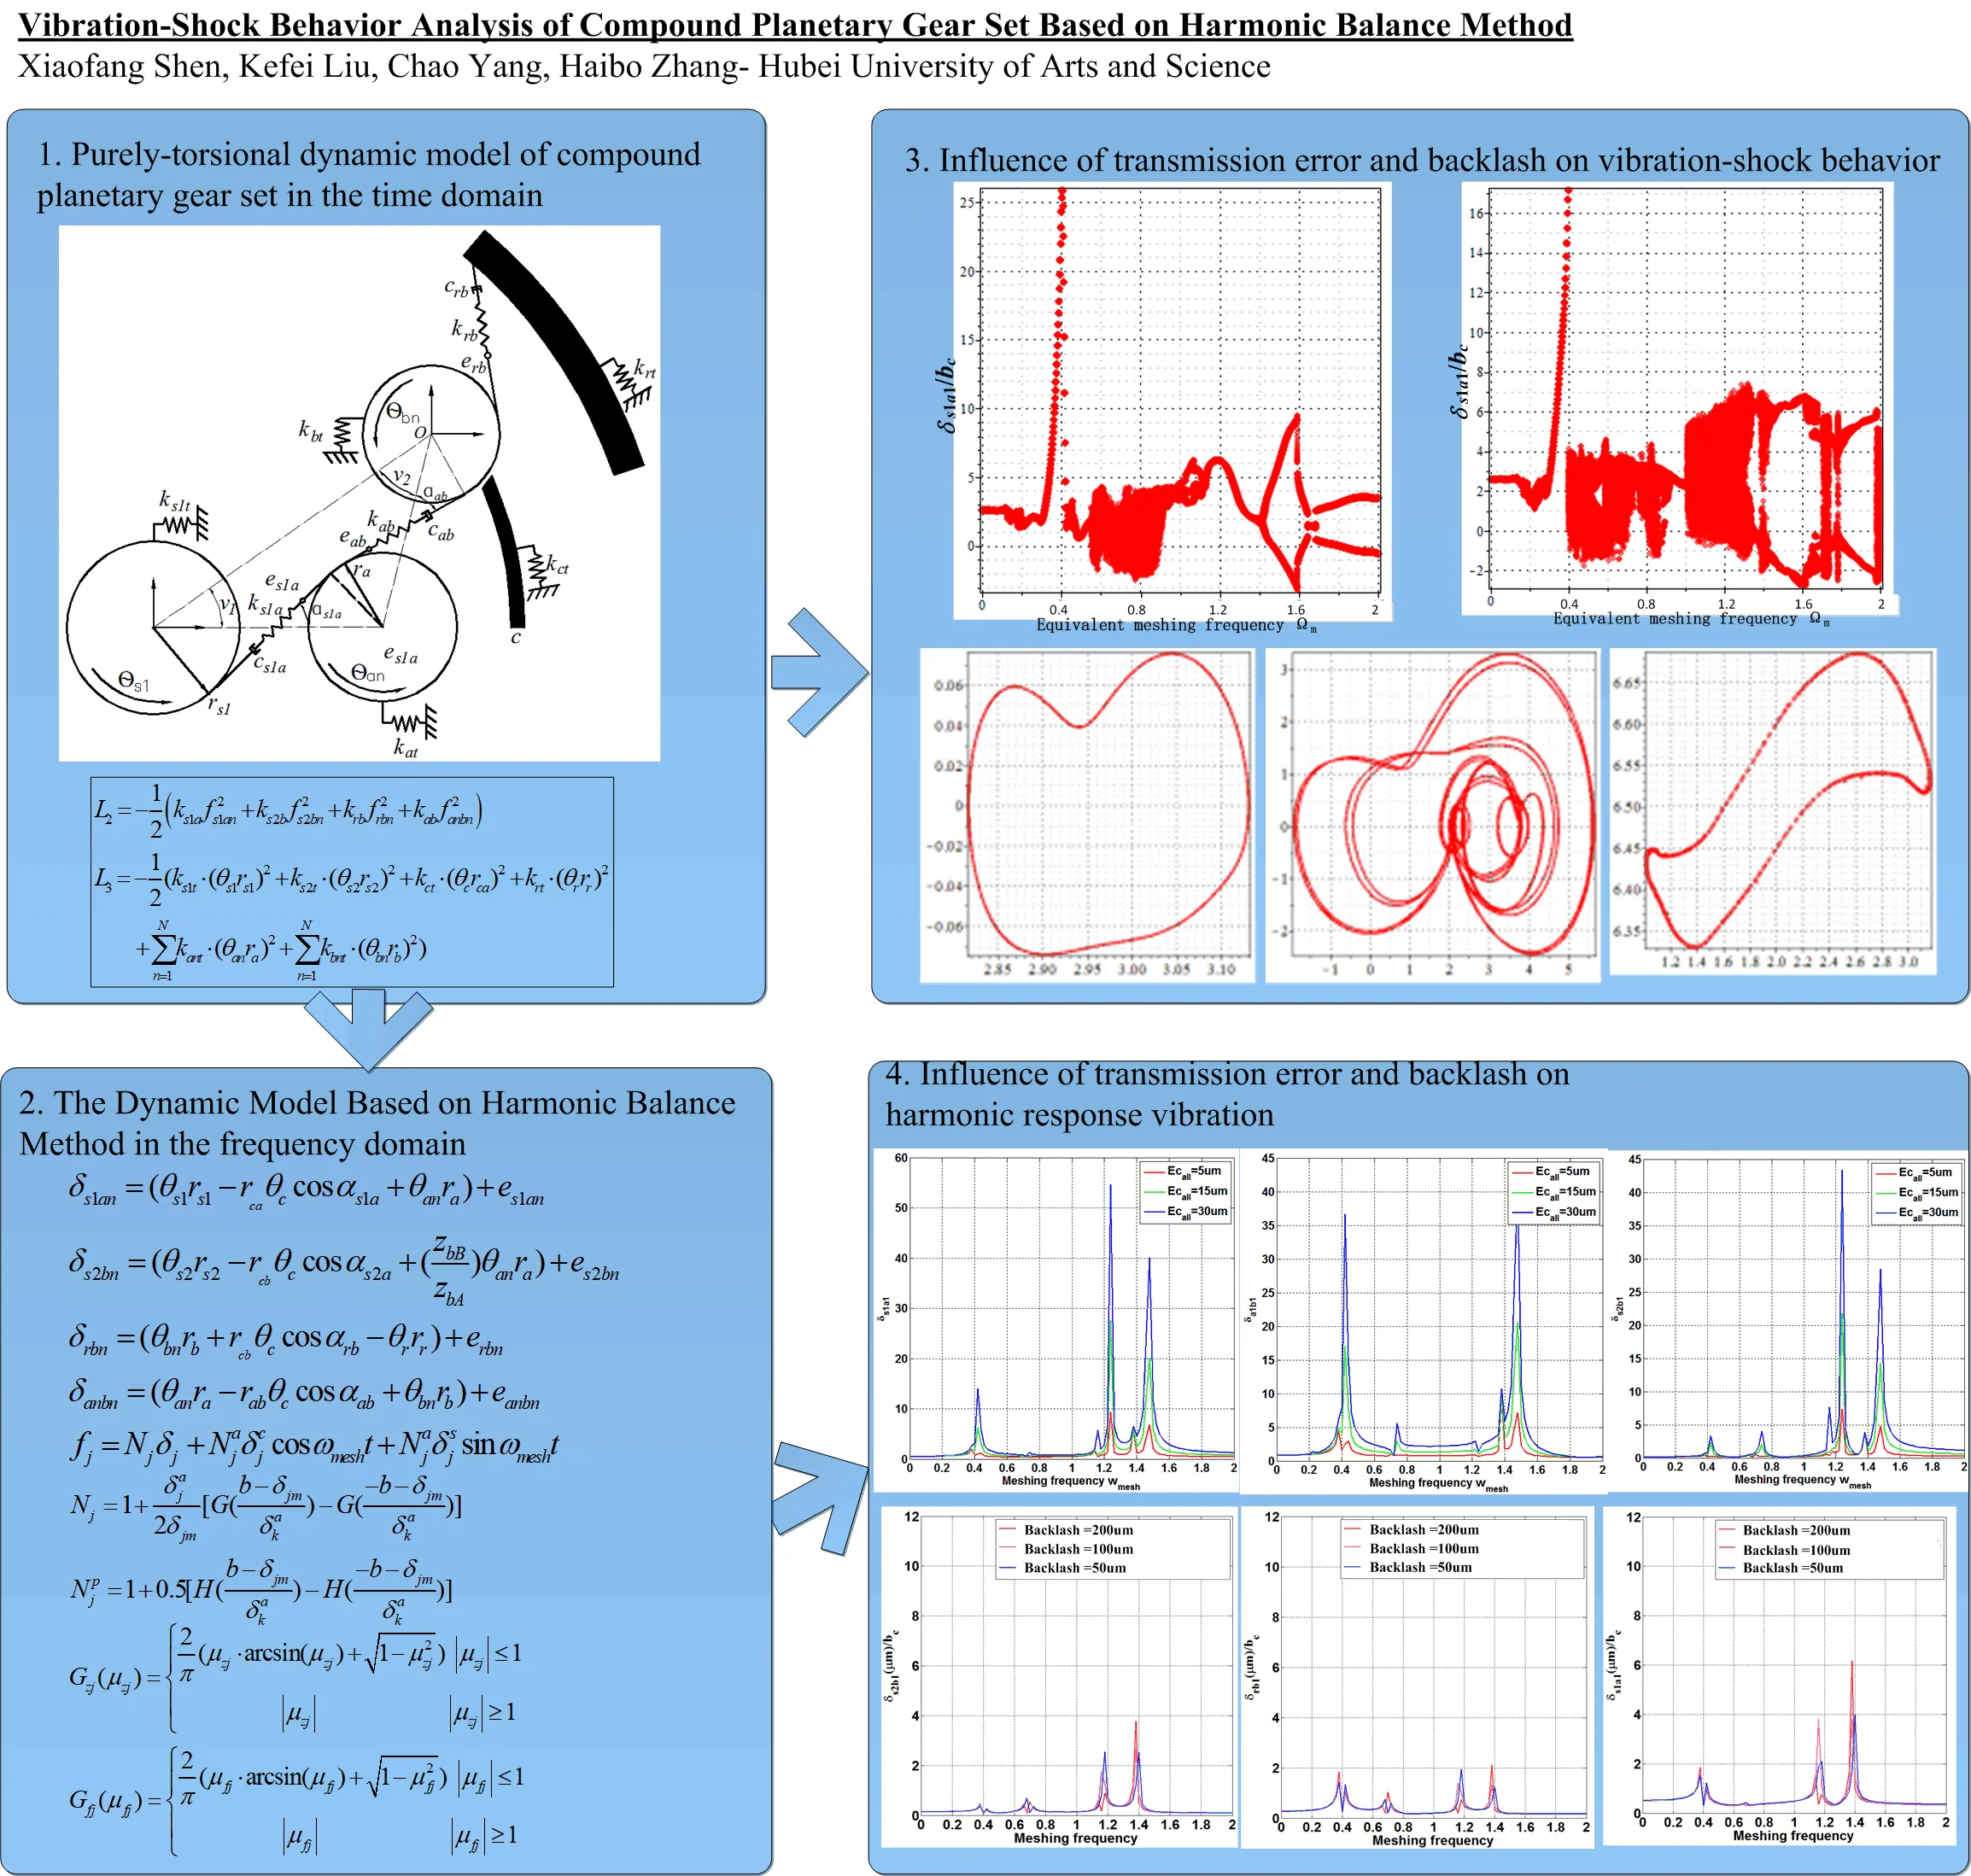 Vibration-shock behavior analysis of compound planetary gear set based on harmonic balance method